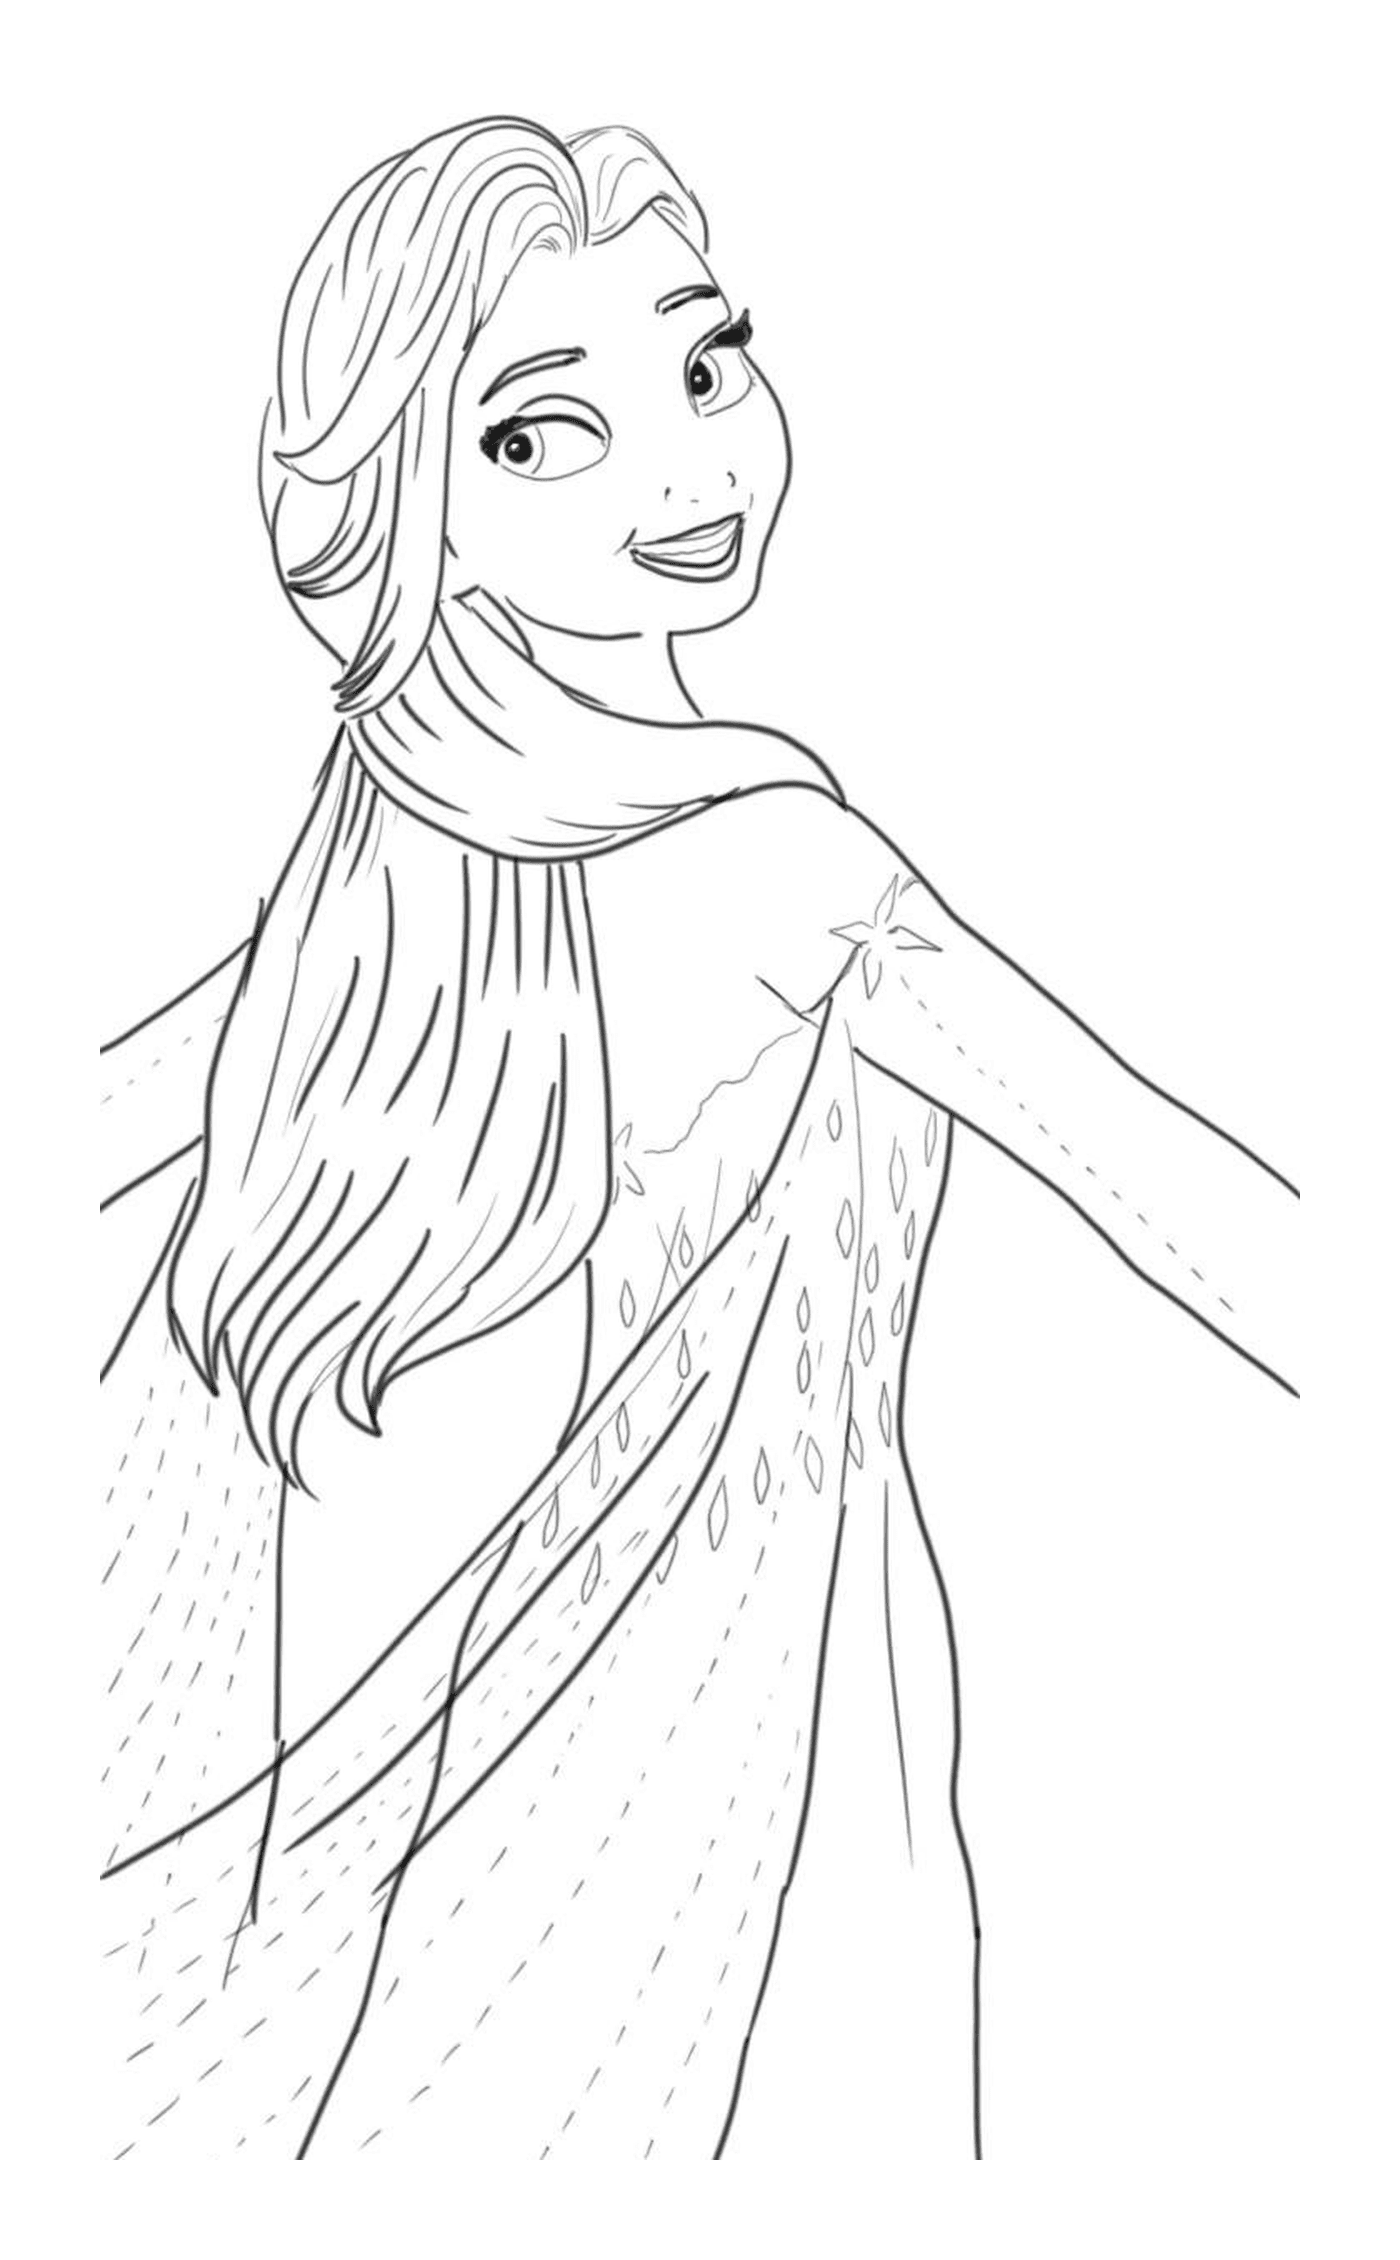  Elsa en vestido escandinavo 